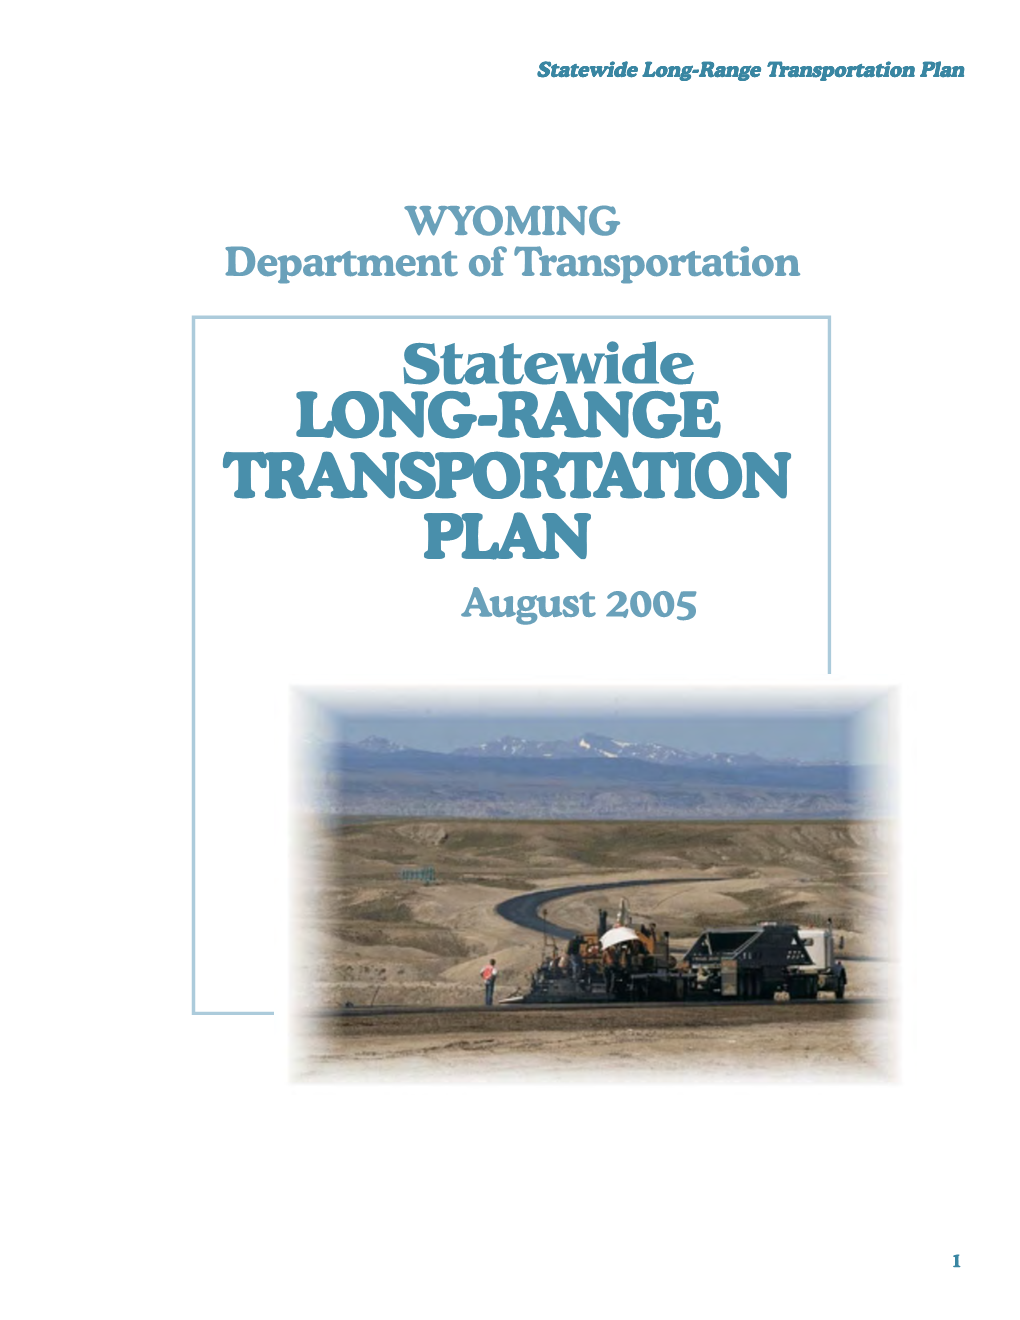 Long-Range Transportation Plan Statewide LONG-RANGE TRANSPORTATION PLAN EXECUTIVE SUMMARY